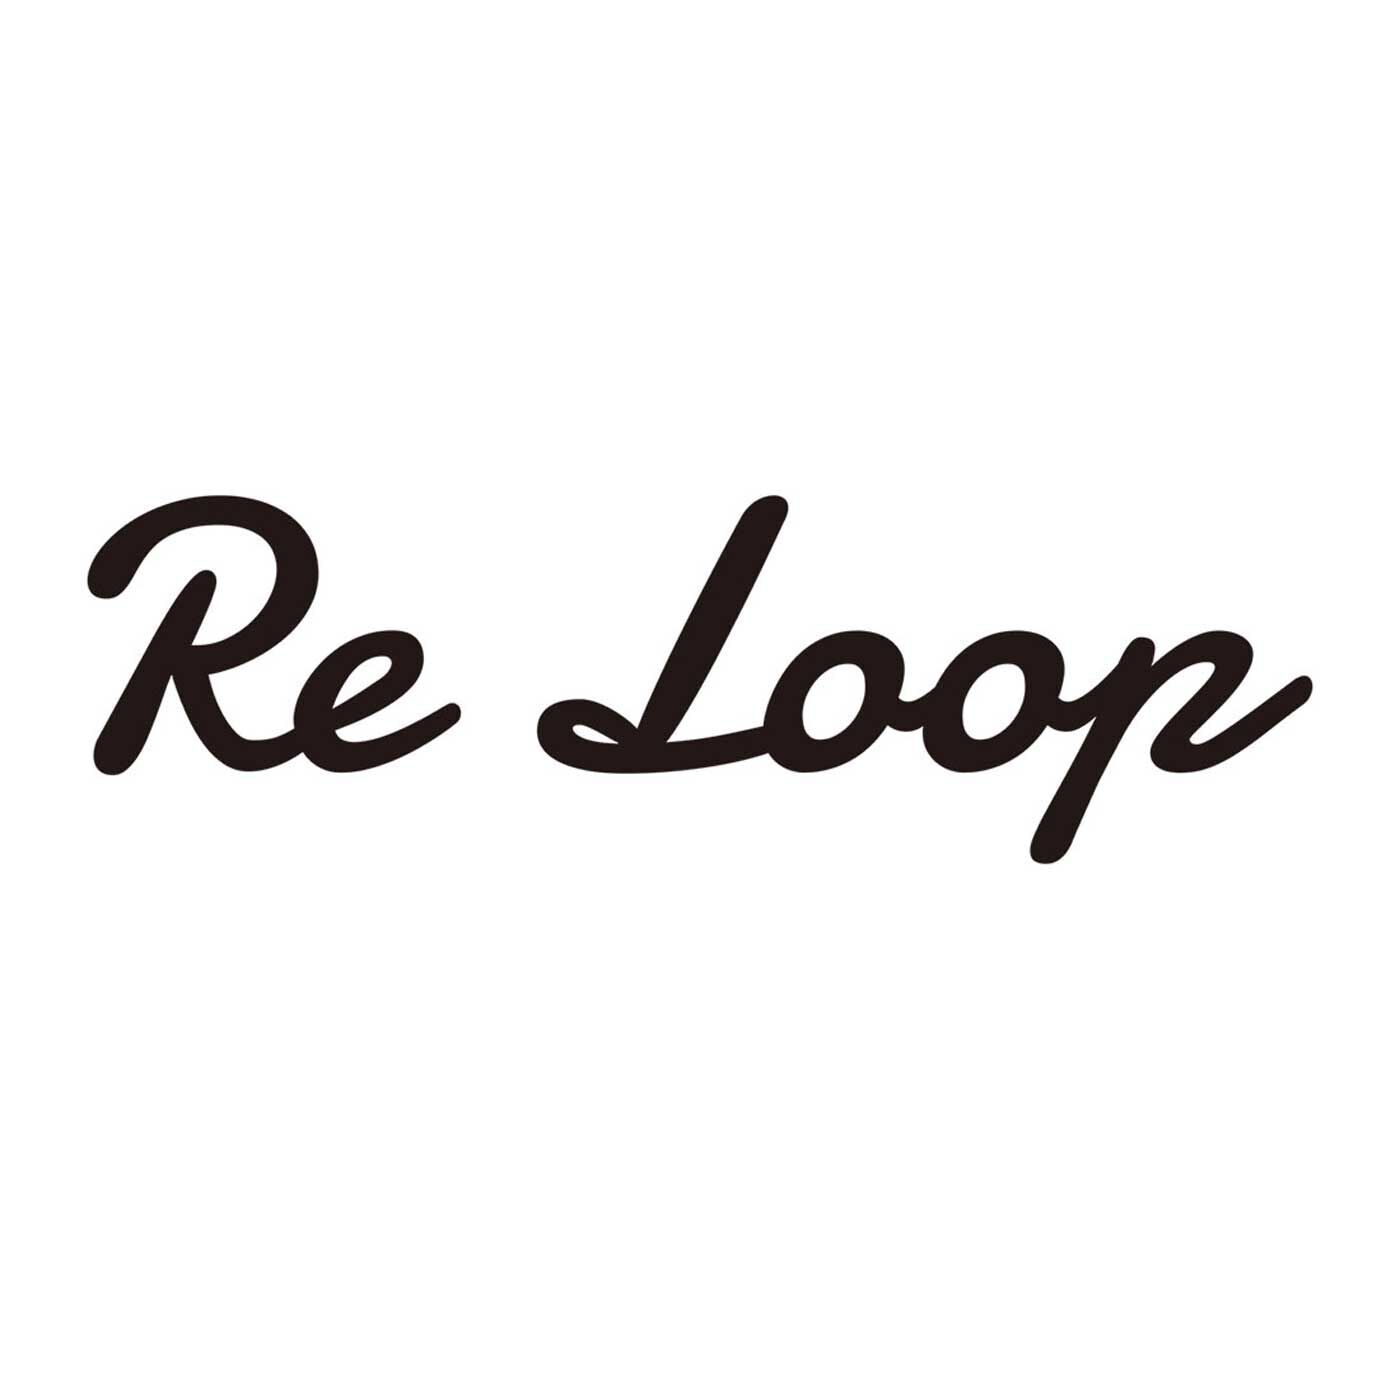 フェリシモの雑貨 Kraso|ReLoop コーヒー豆殻染スラブミックス ソックス〈カフェモカ〉|【Re Loop】奈良の老舗靴下工場「SOUKI」のブランドです。人と環境にやさしい素材を使い、代々受け継がれてきた技術や知識を次世代に引き継ぐことを使命に生まれました。使用している「リサイクル糸」は、明治大正時代から続けられてきた技術をルーツとする、紡績方法でつくられたもの。未利用のまま廃棄される繊維原料や、紡績、織布工場で発生する糸くず、布地などを集めて綿にほぐしなおした原料を使用して、糸に紡いだもの。空気を多く含んでいるので、「ナチュラルなふくらみ」と「かさ高性」があります。そんなリサイクル糸を使い、希少な編み機でていねいに編み上げられた「Re Loop」の靴下は、ちょっぴり特別。それでいて毎日履くのにぴったりの相棒的存在です。